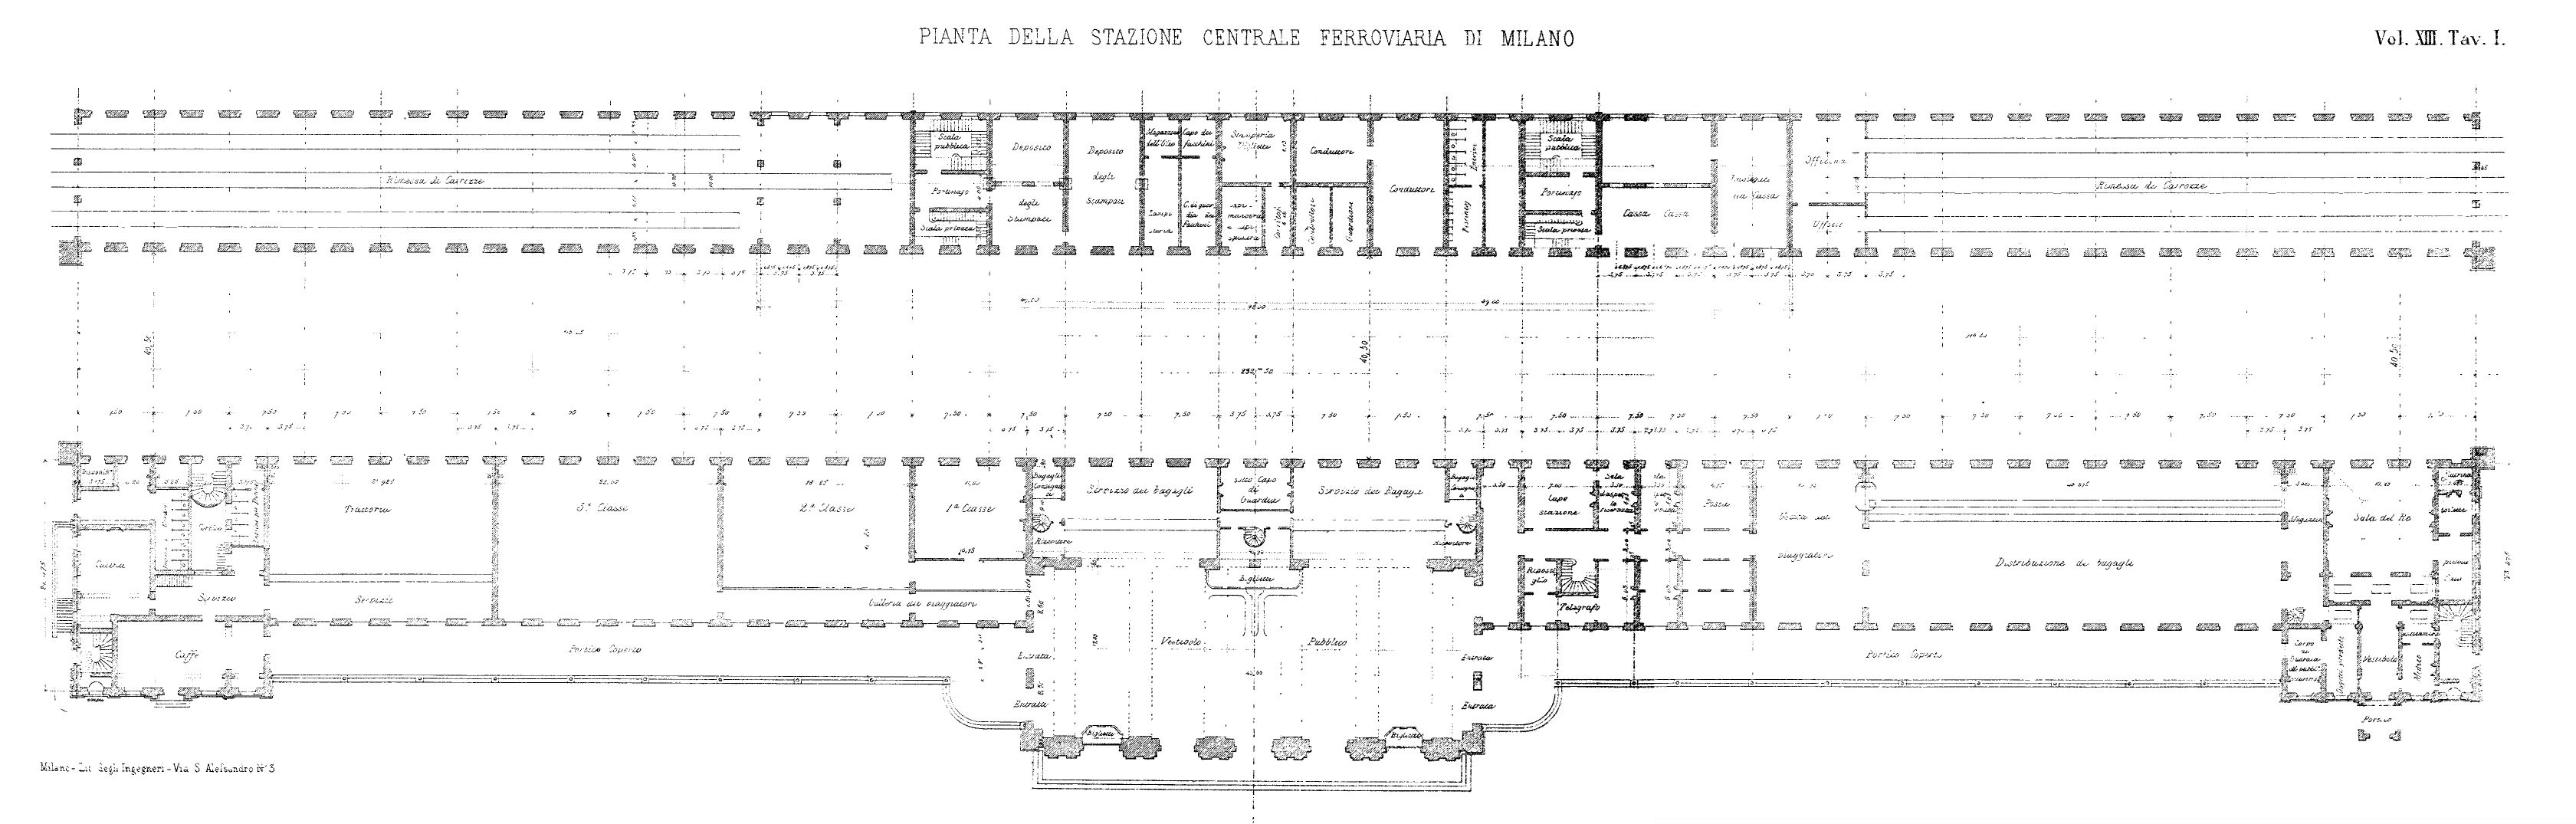 stazione milano centrale 1865  pianta  restored